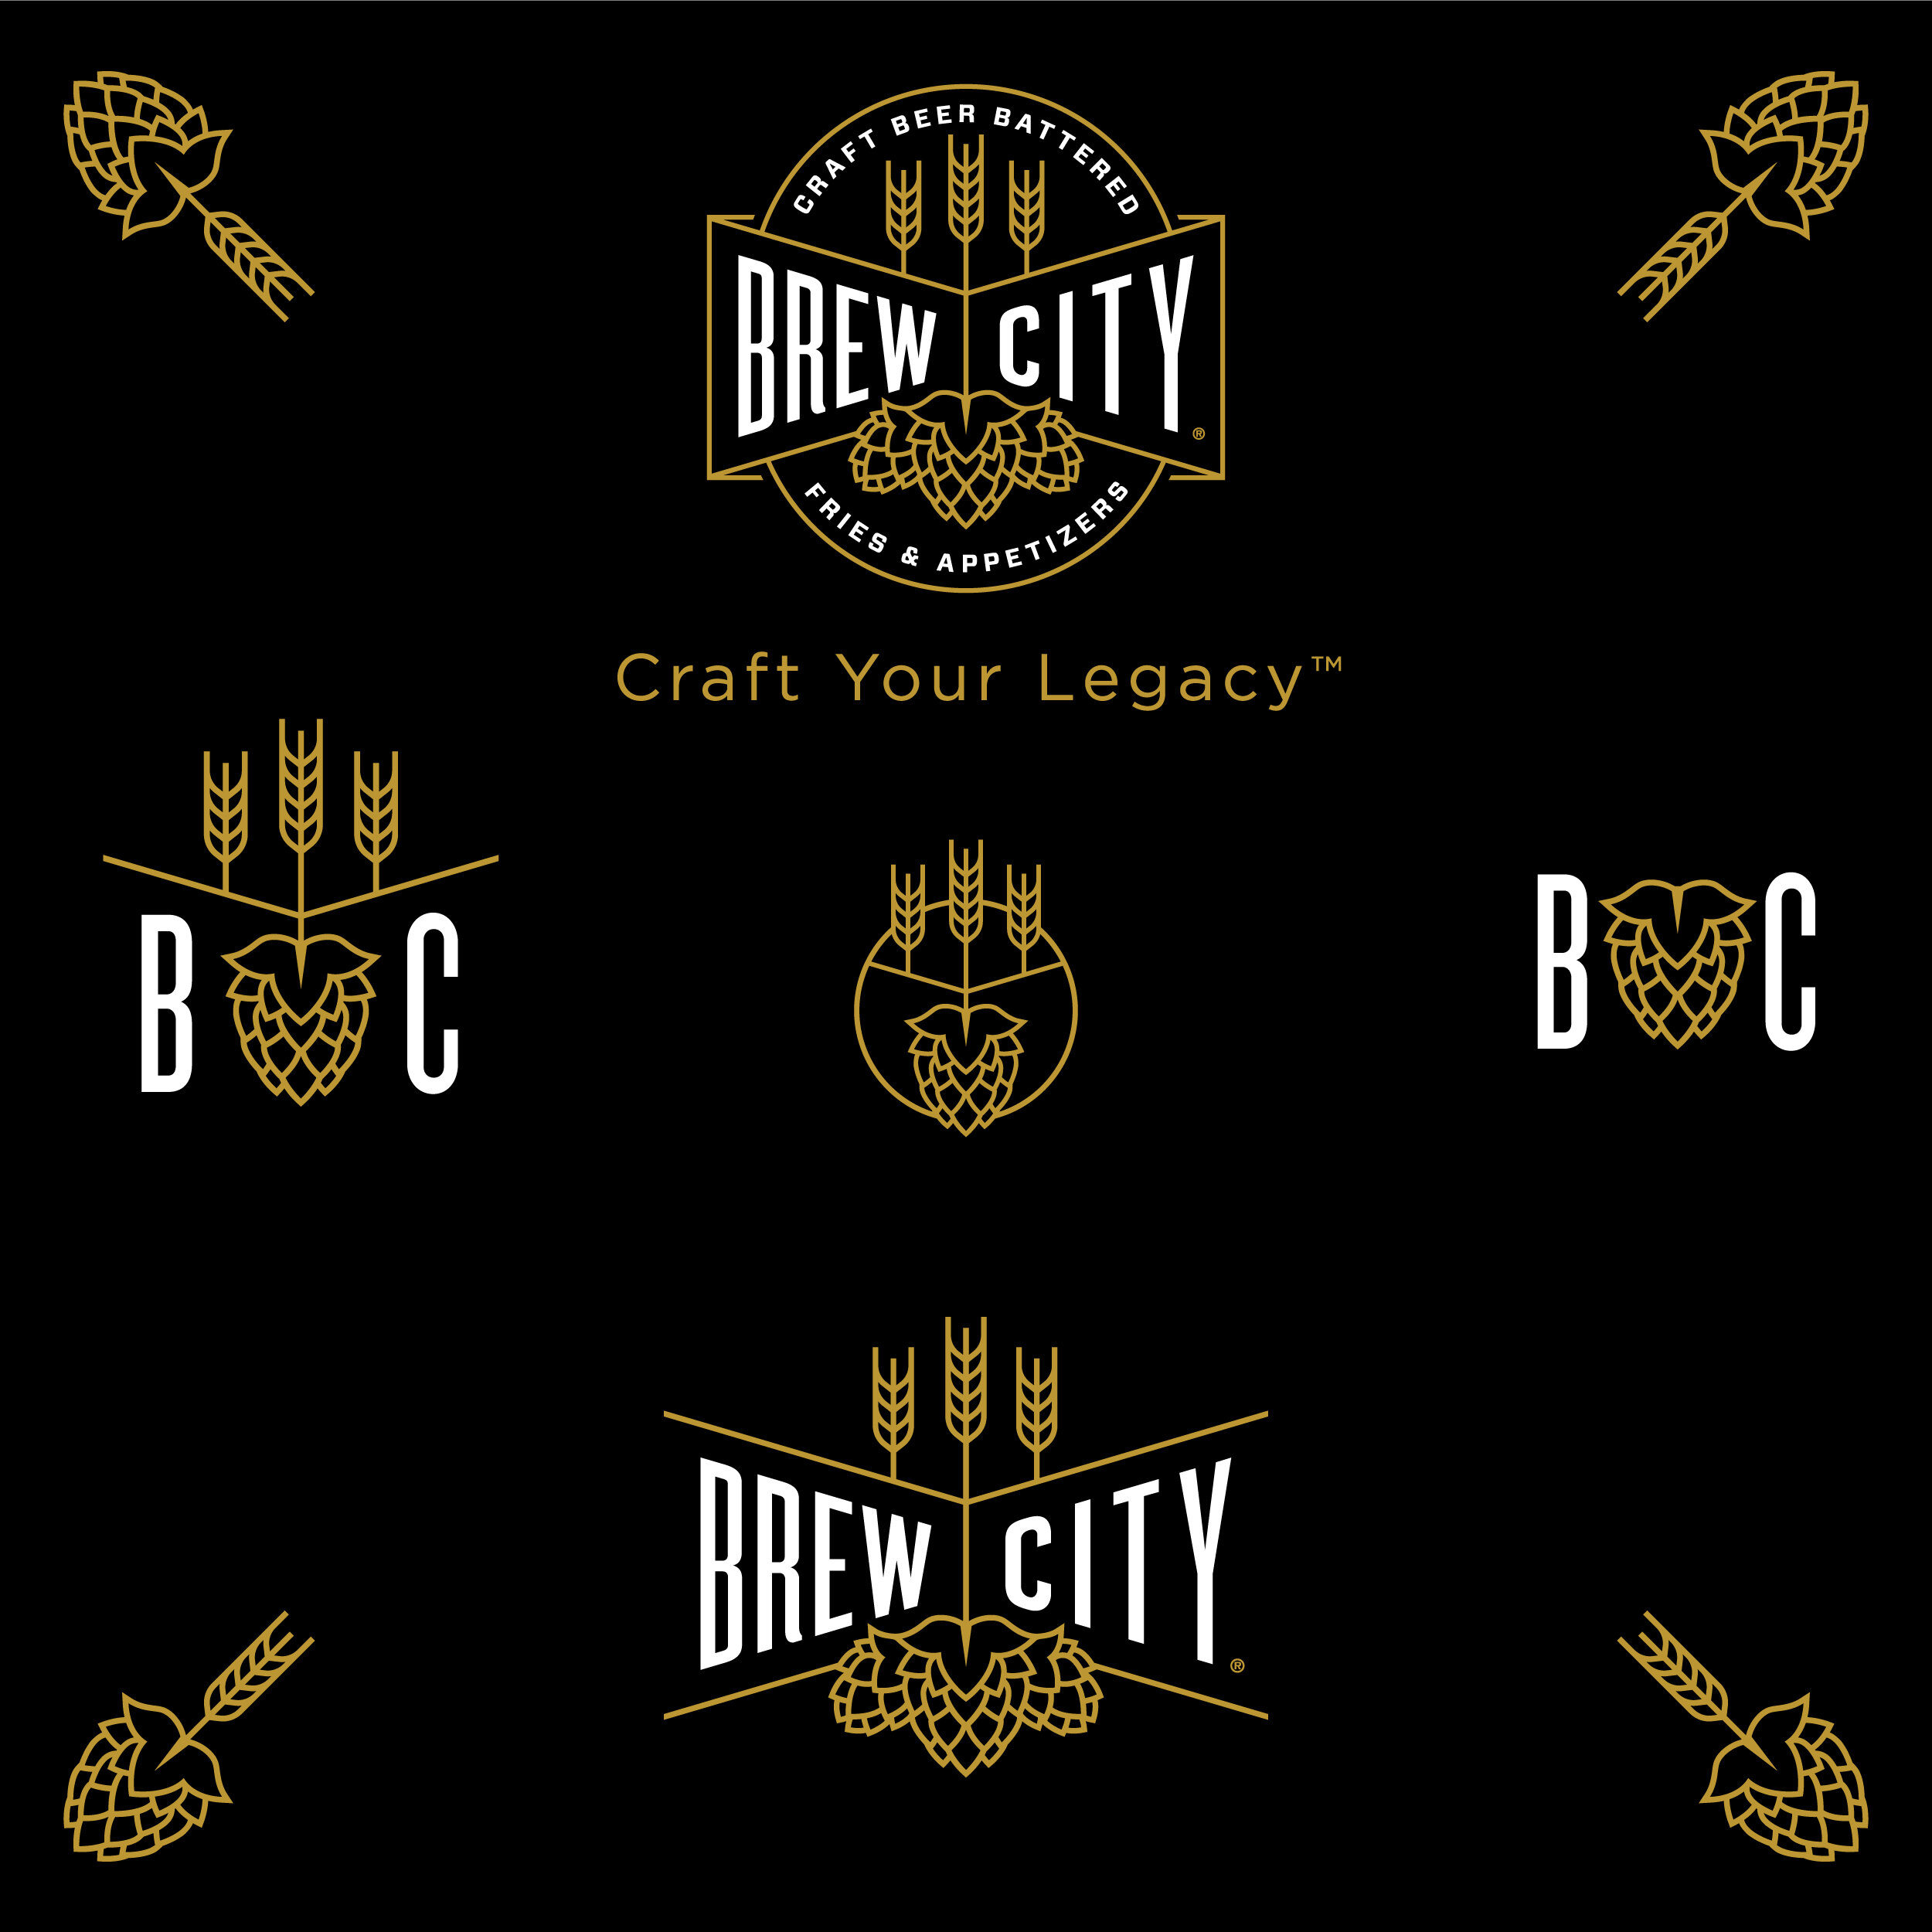 BrewCity-Branding_Responsive.jpg